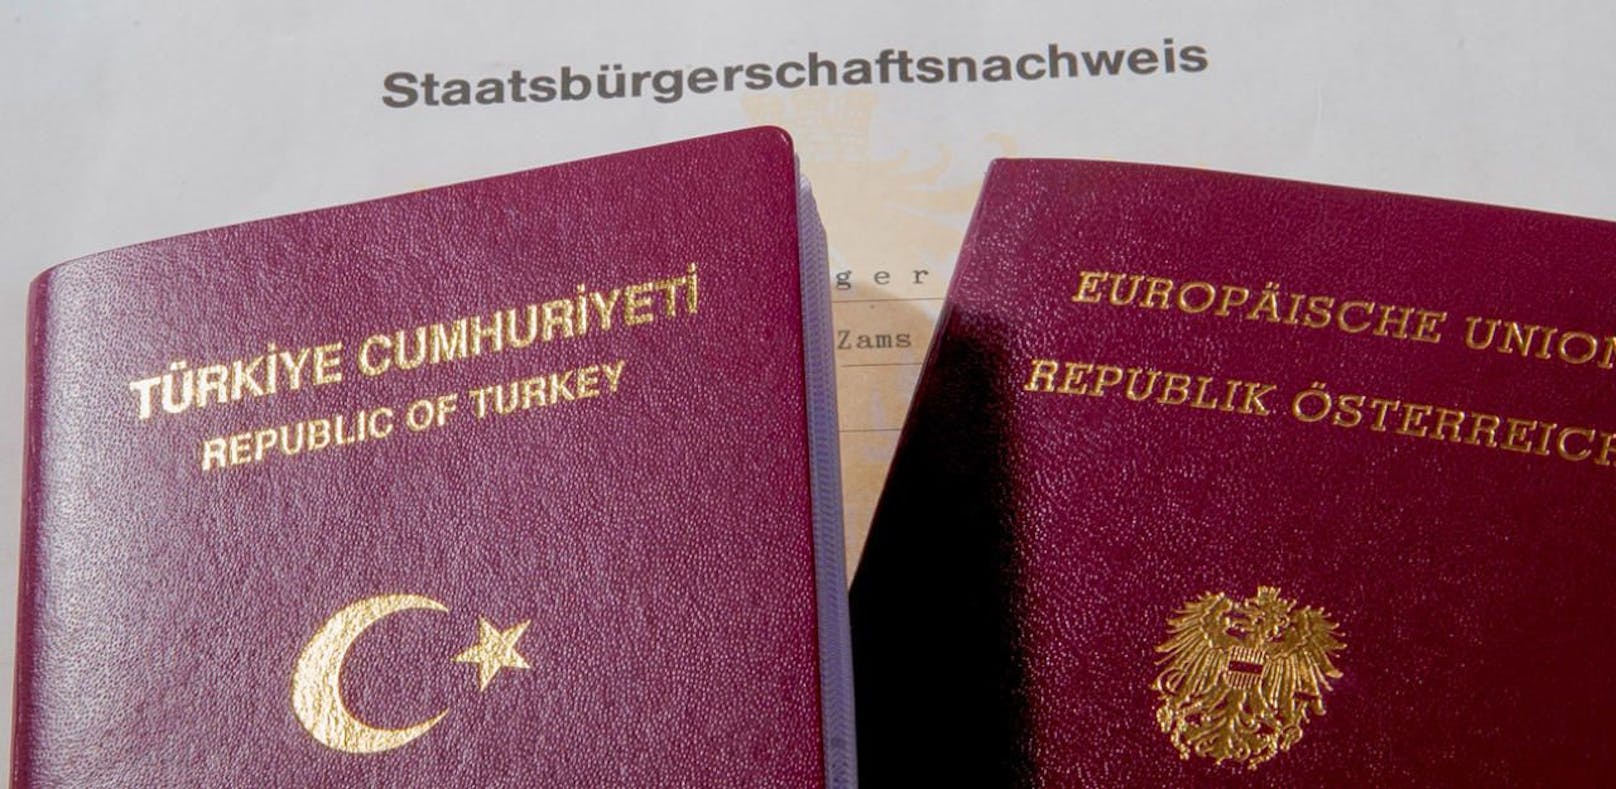 Die Salzburgerin könnte die österreichische Staatsbürgerschaft verlieren